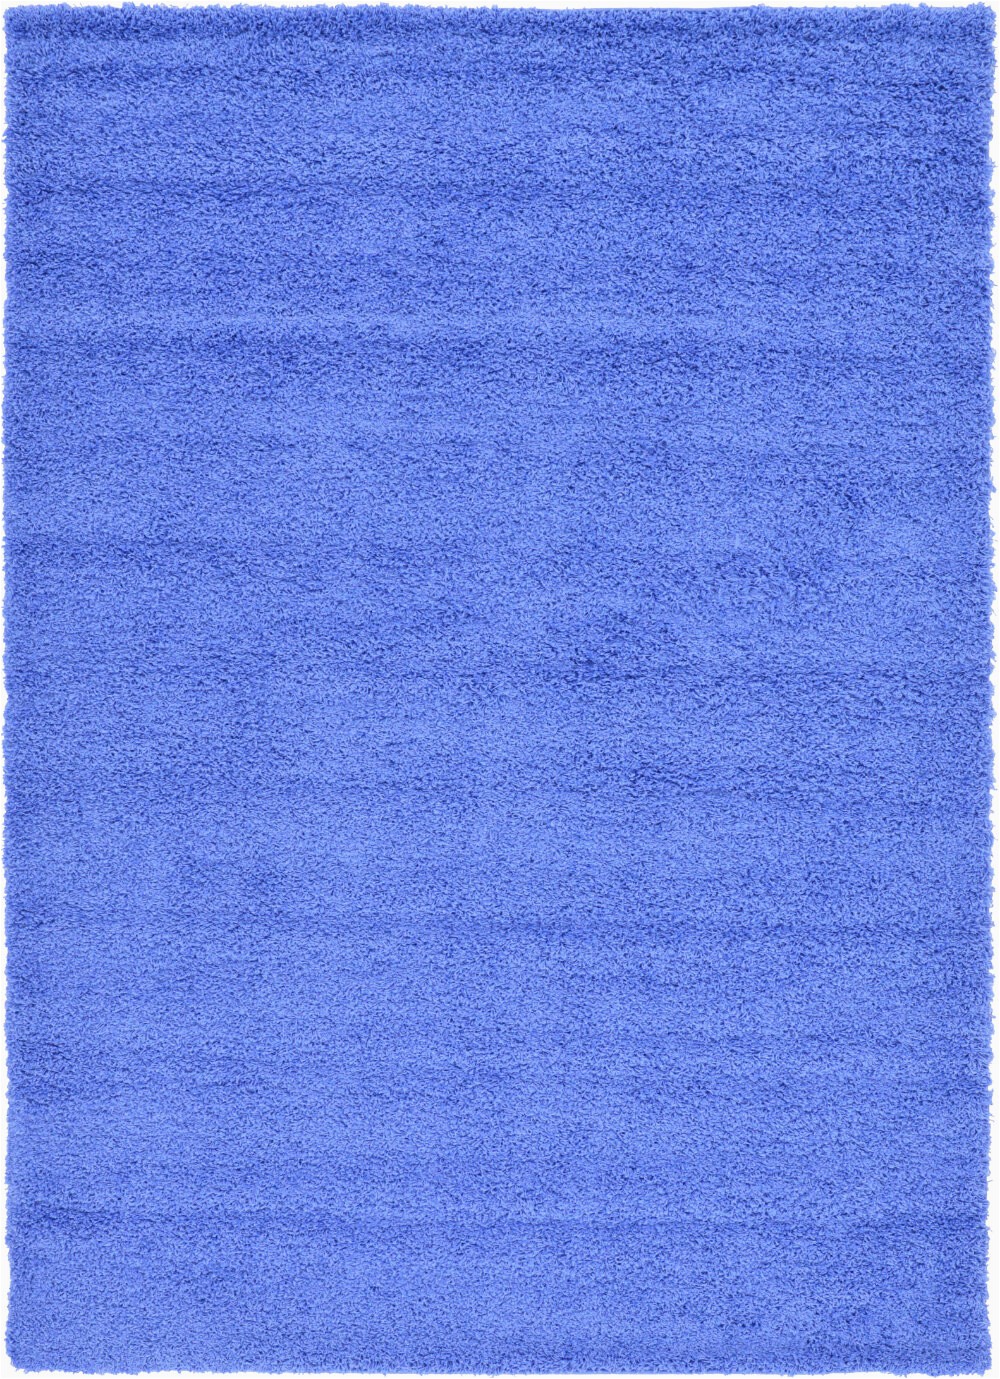 angeline periwinkle blue area rug